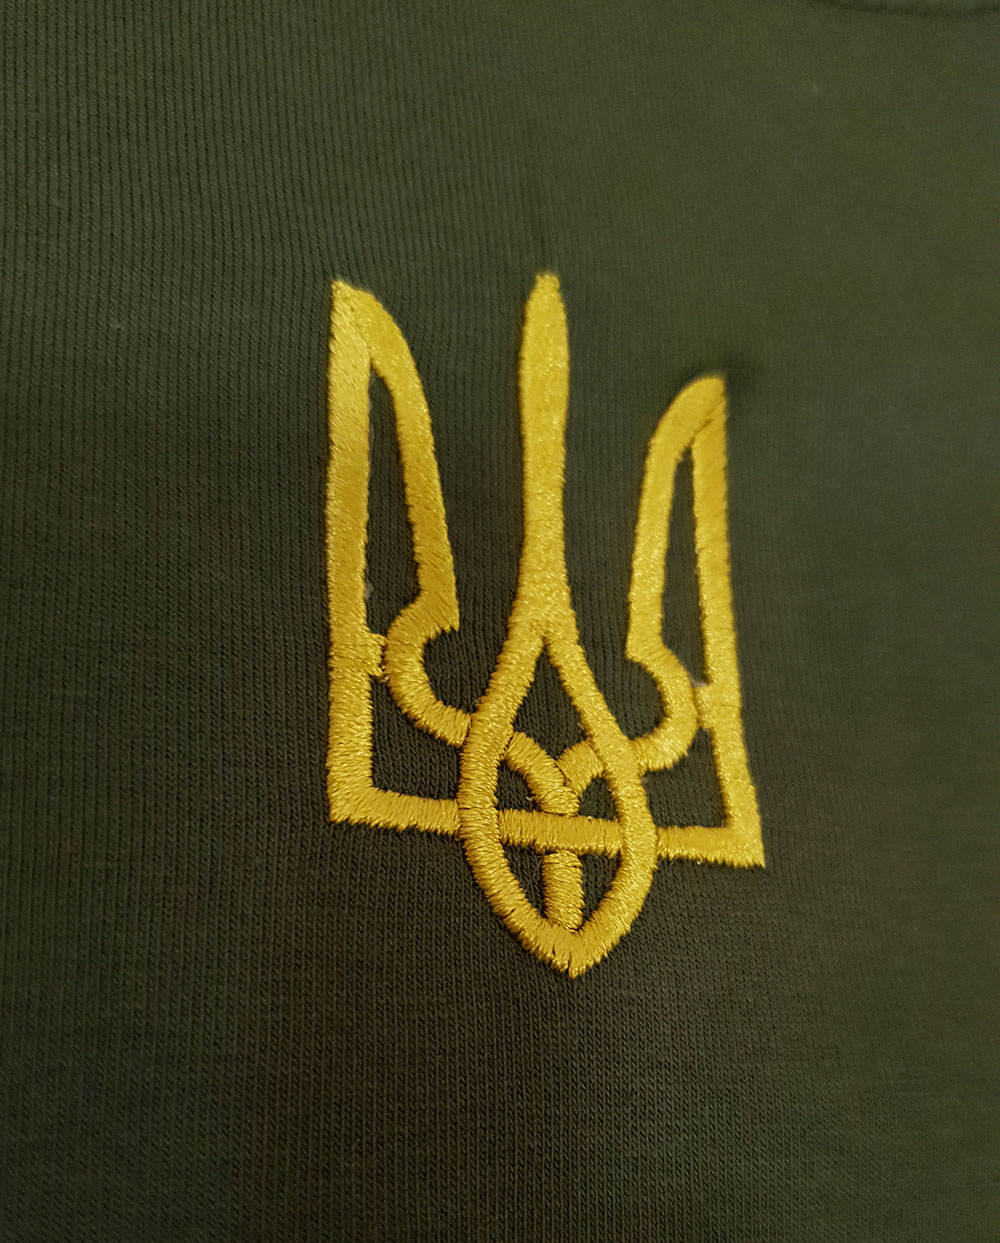 Чашка з маленьким гербом України на грудях